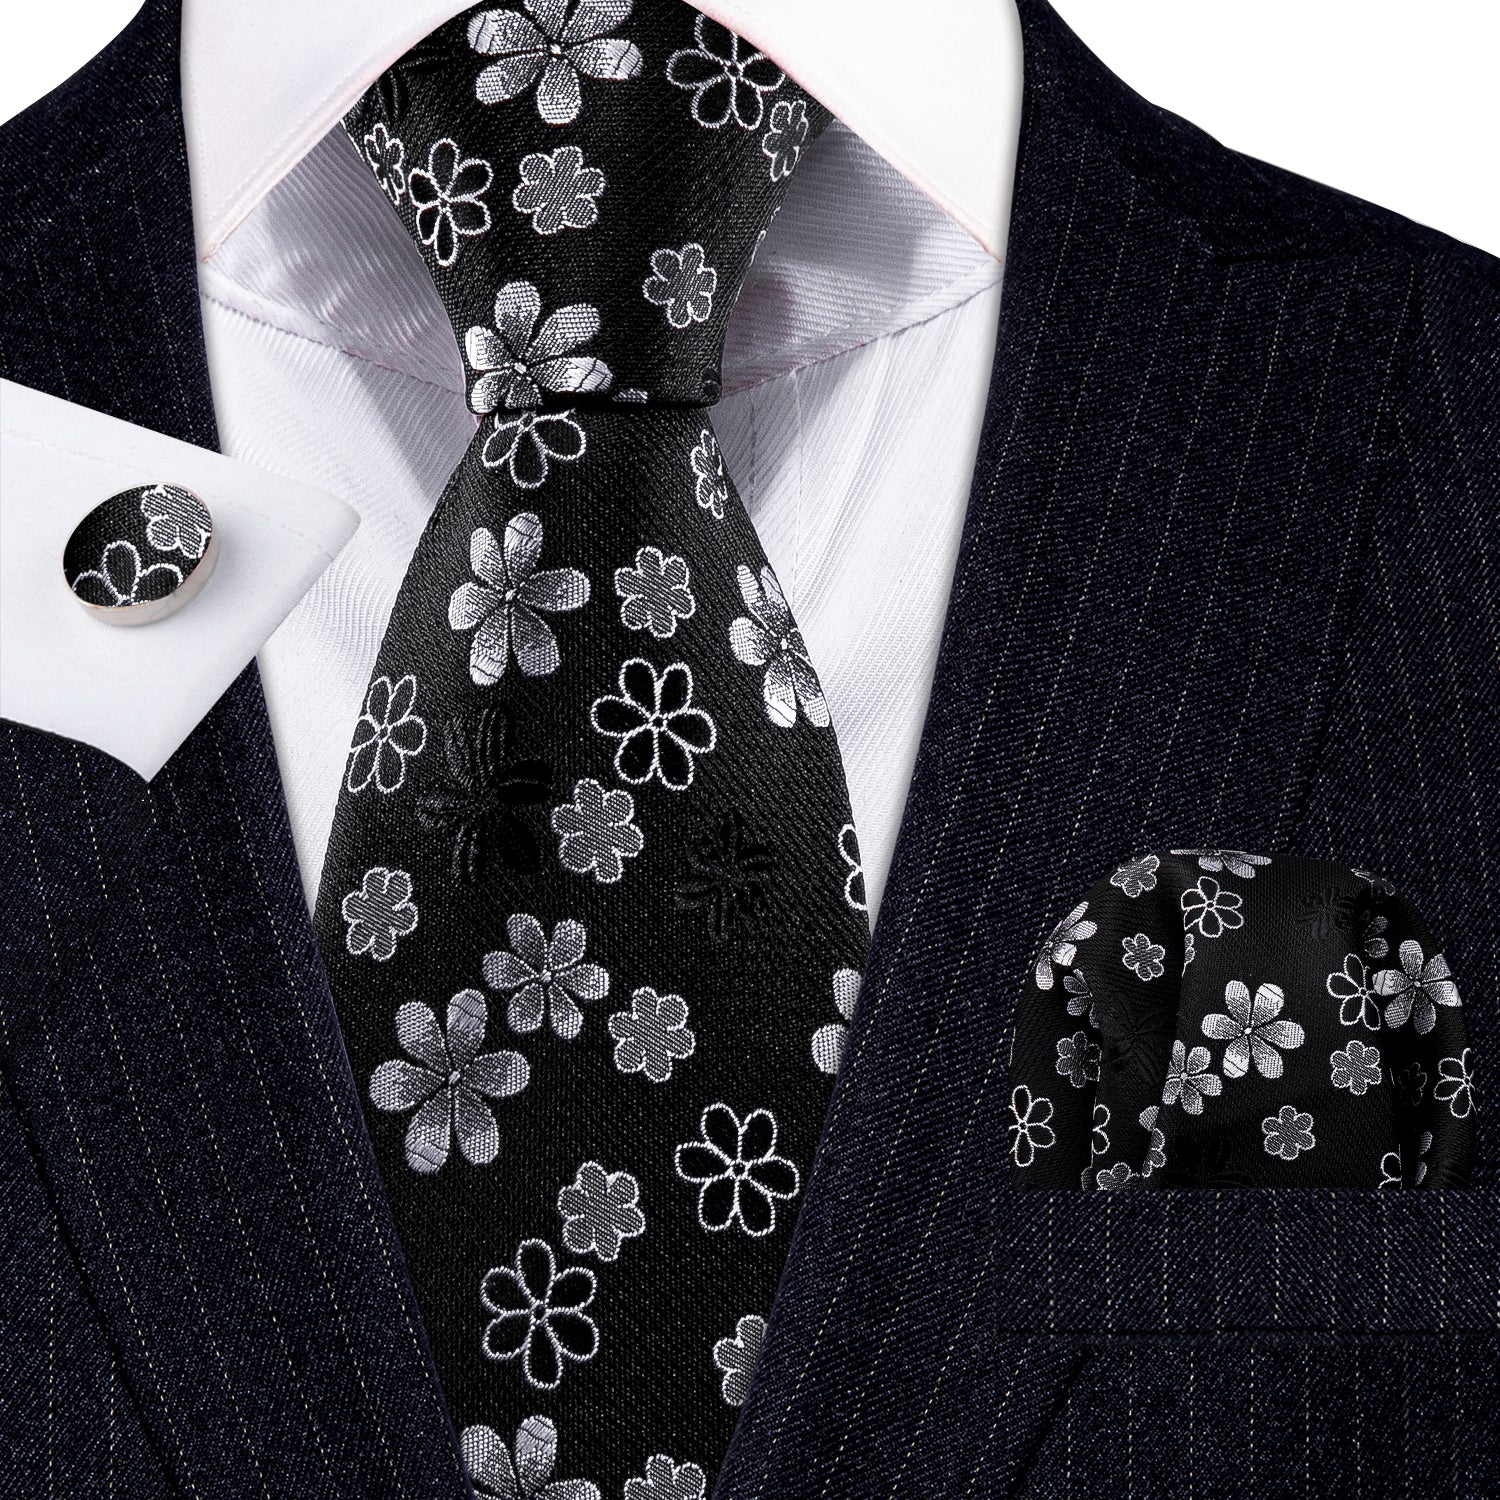 New Black White Flower Silk Tie Handkerchief Cufflinks Set